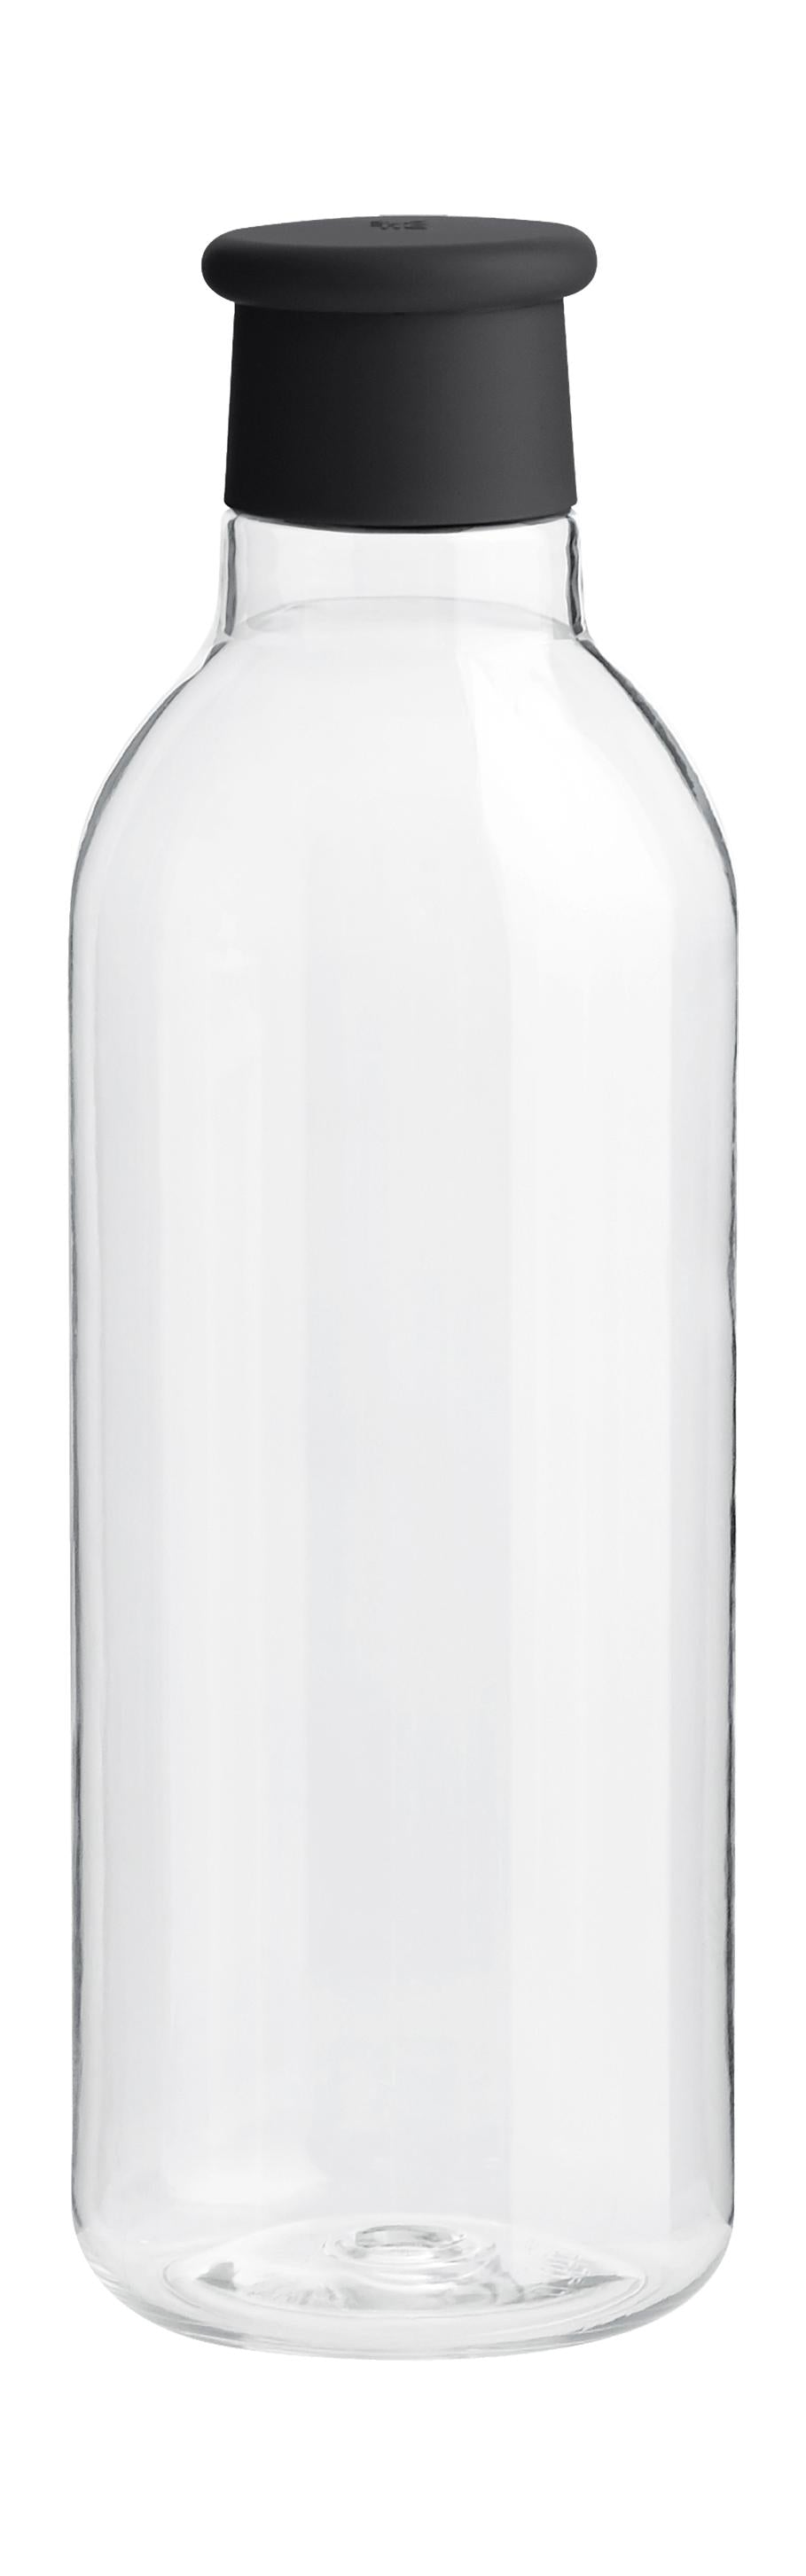 Rig-Tig Dryck-det dricker flaska 0,75 L, svart